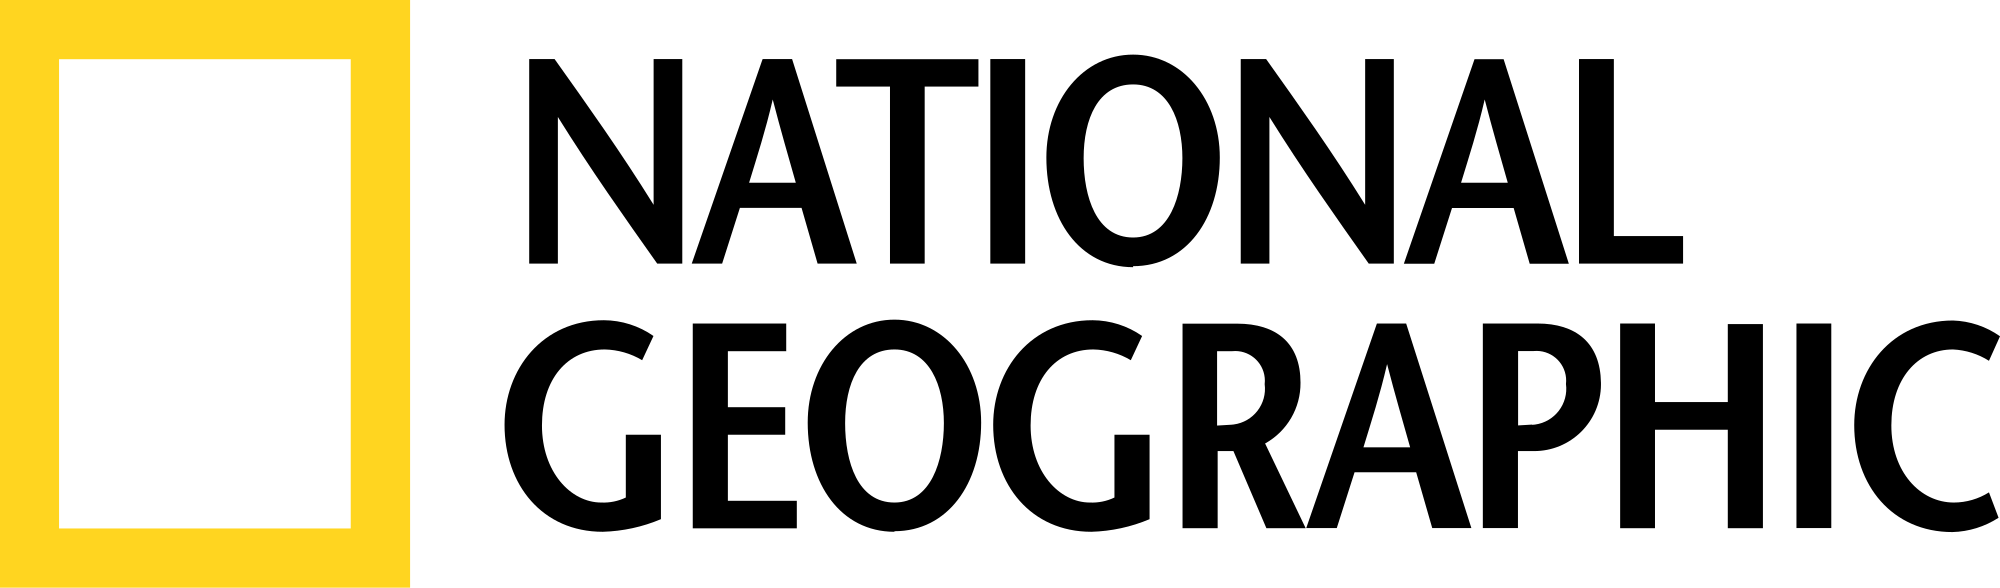 Logo de la société National Geographic 9495